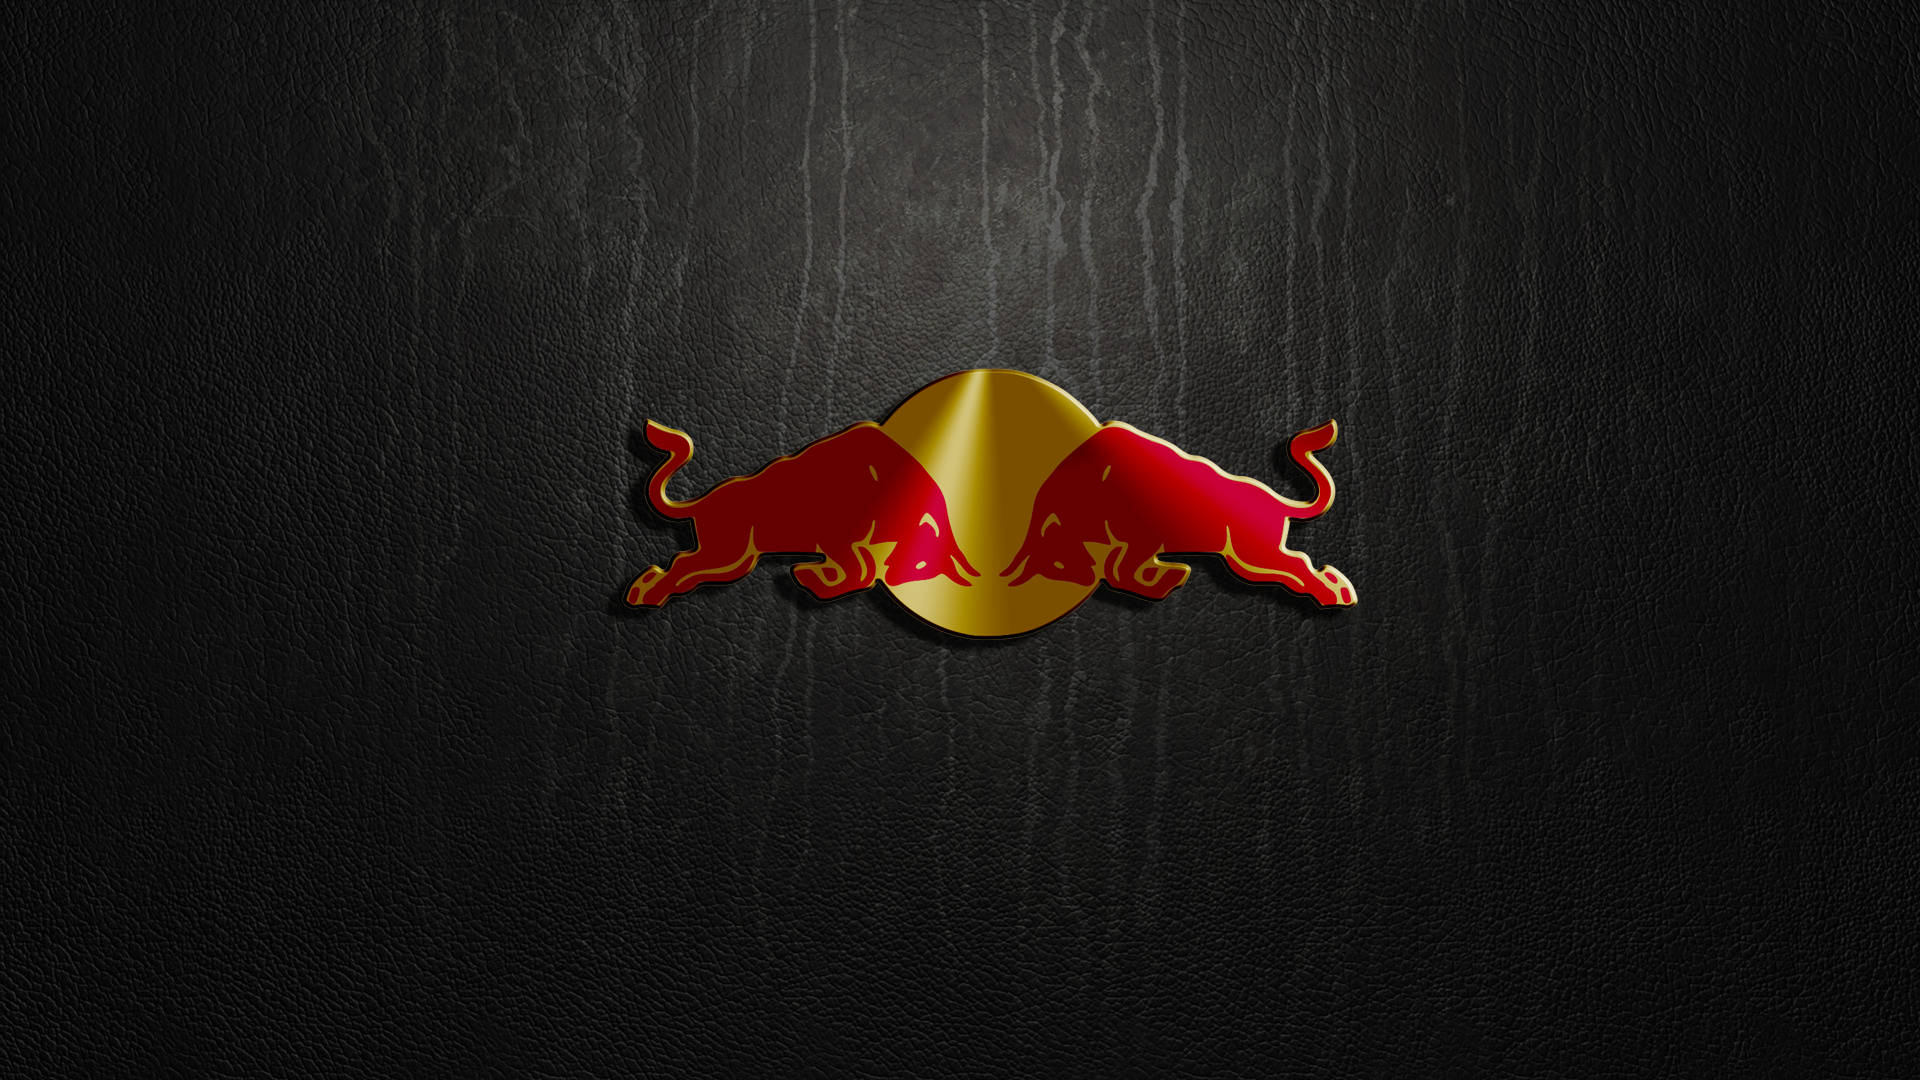 Fondods De Red Bull F1